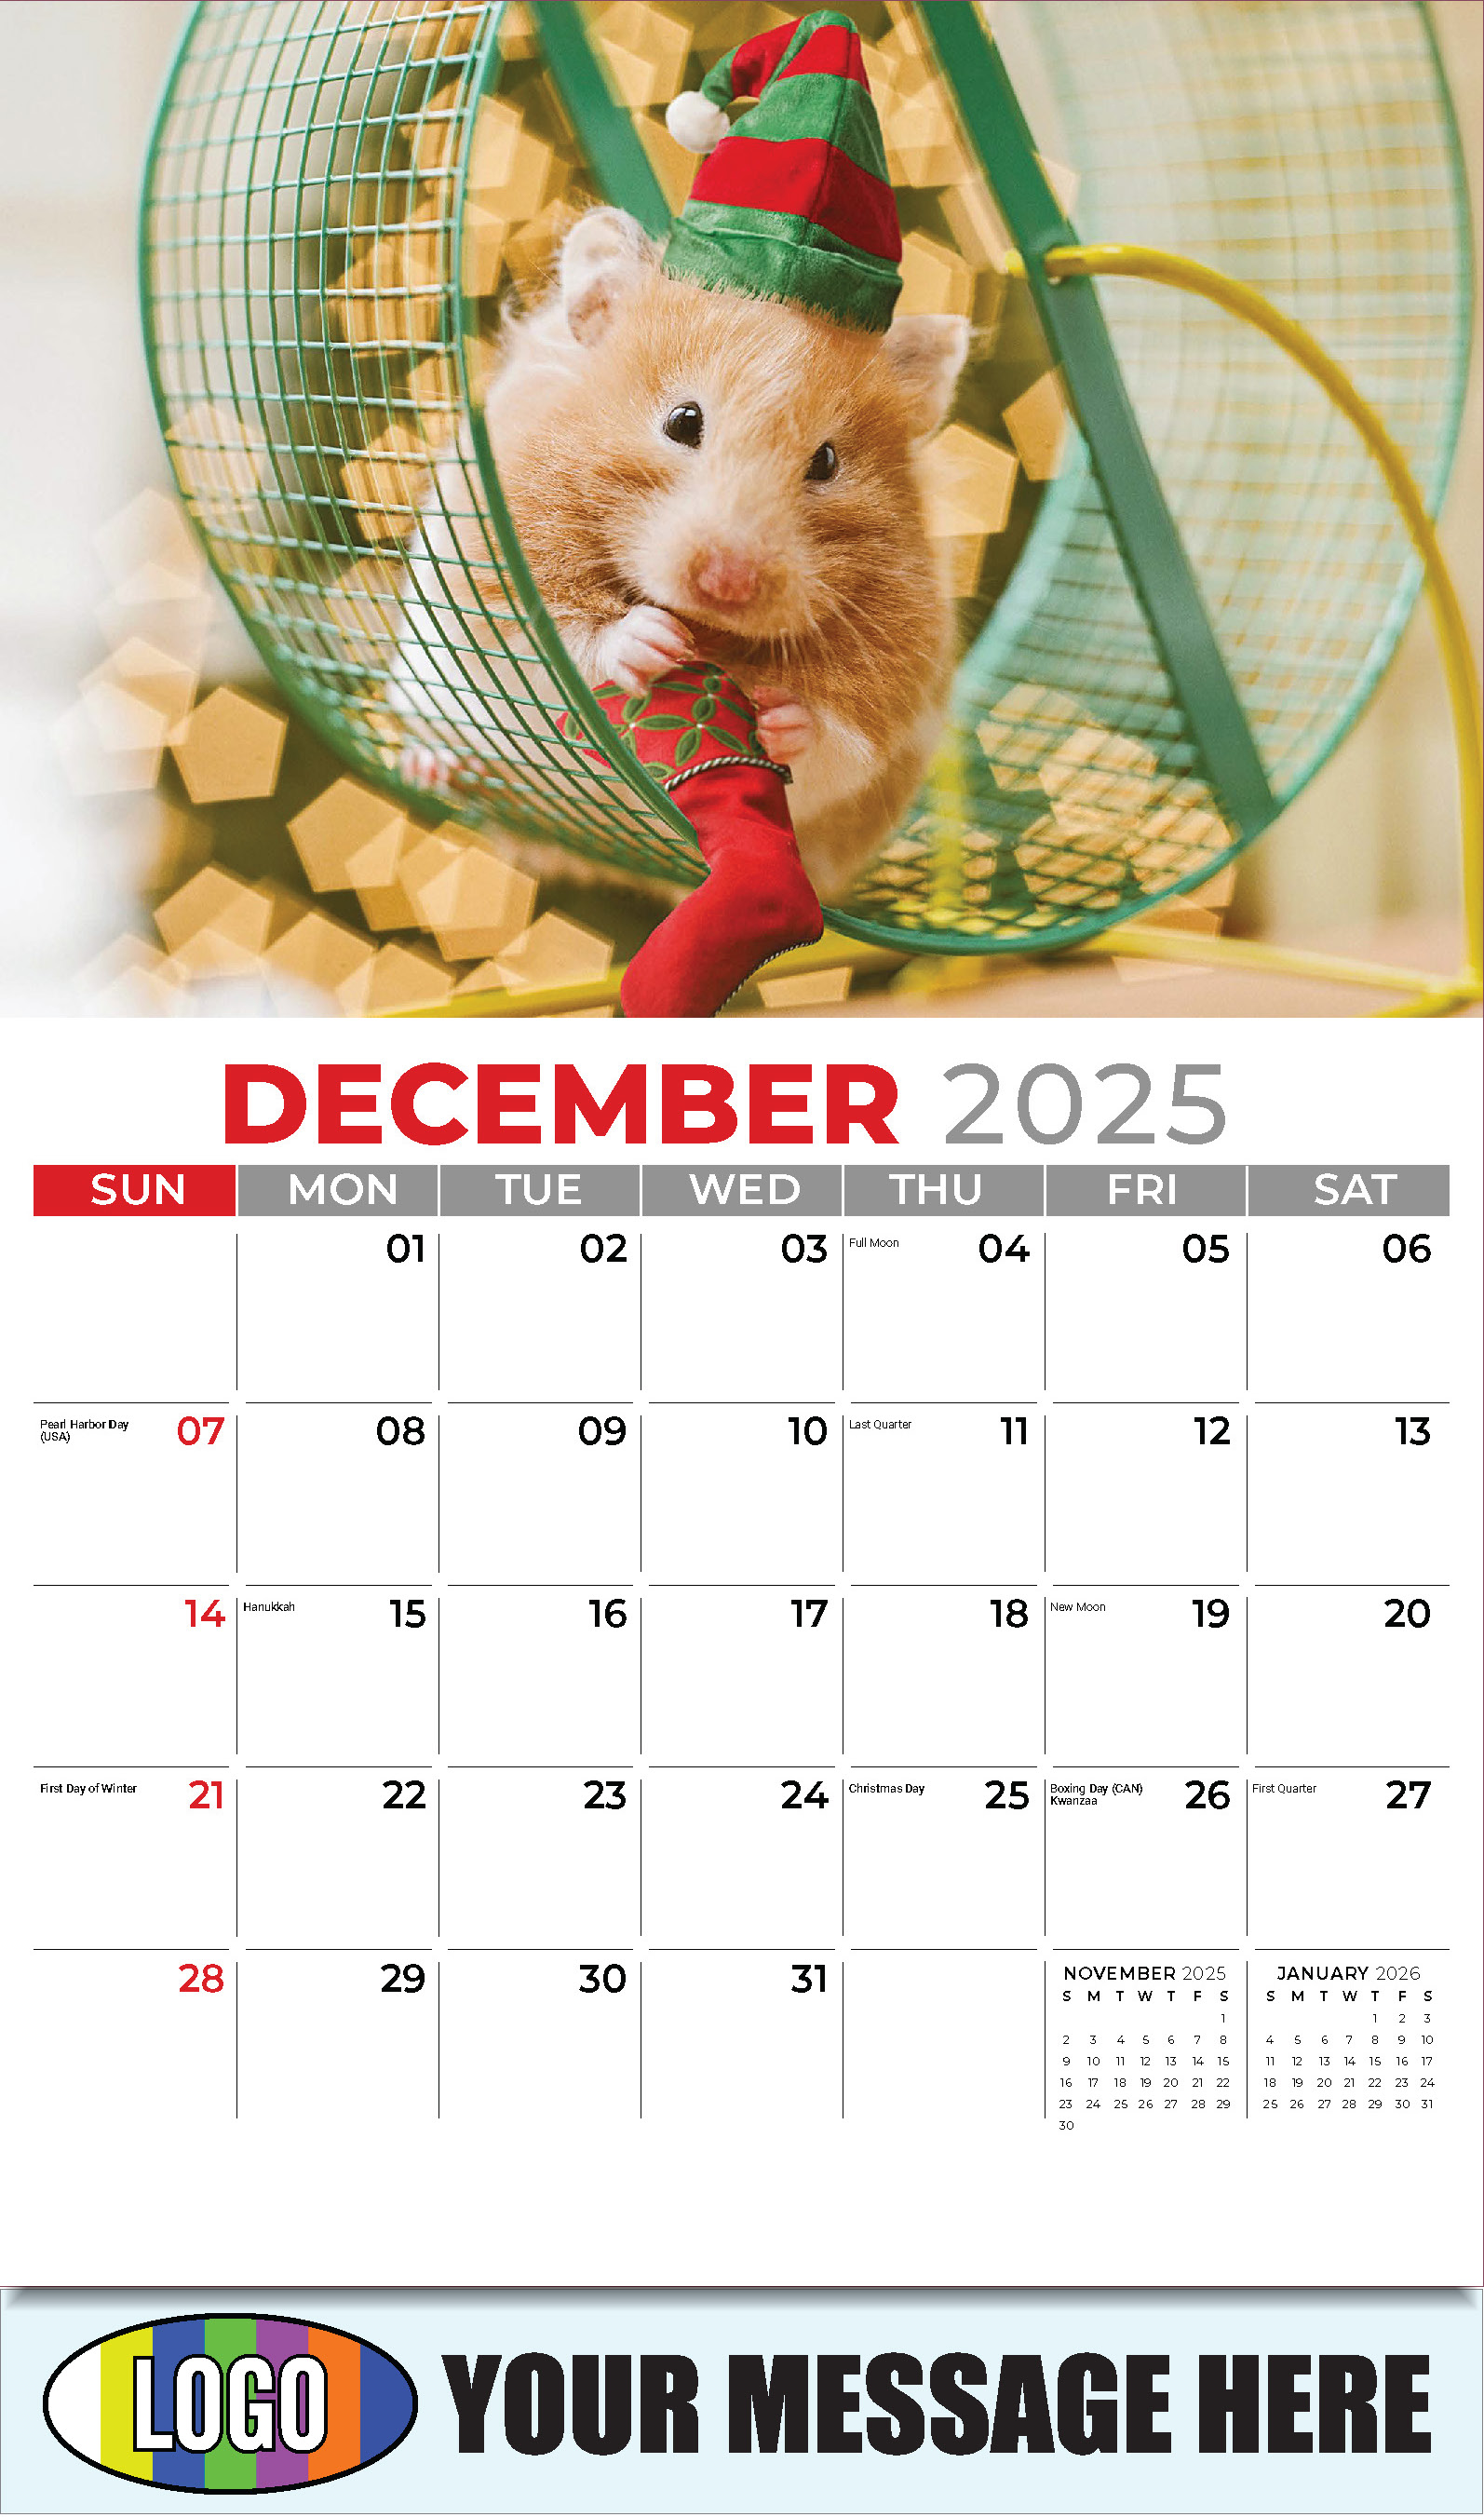 Pets 2025 Business Advertising Wall Calendar - December